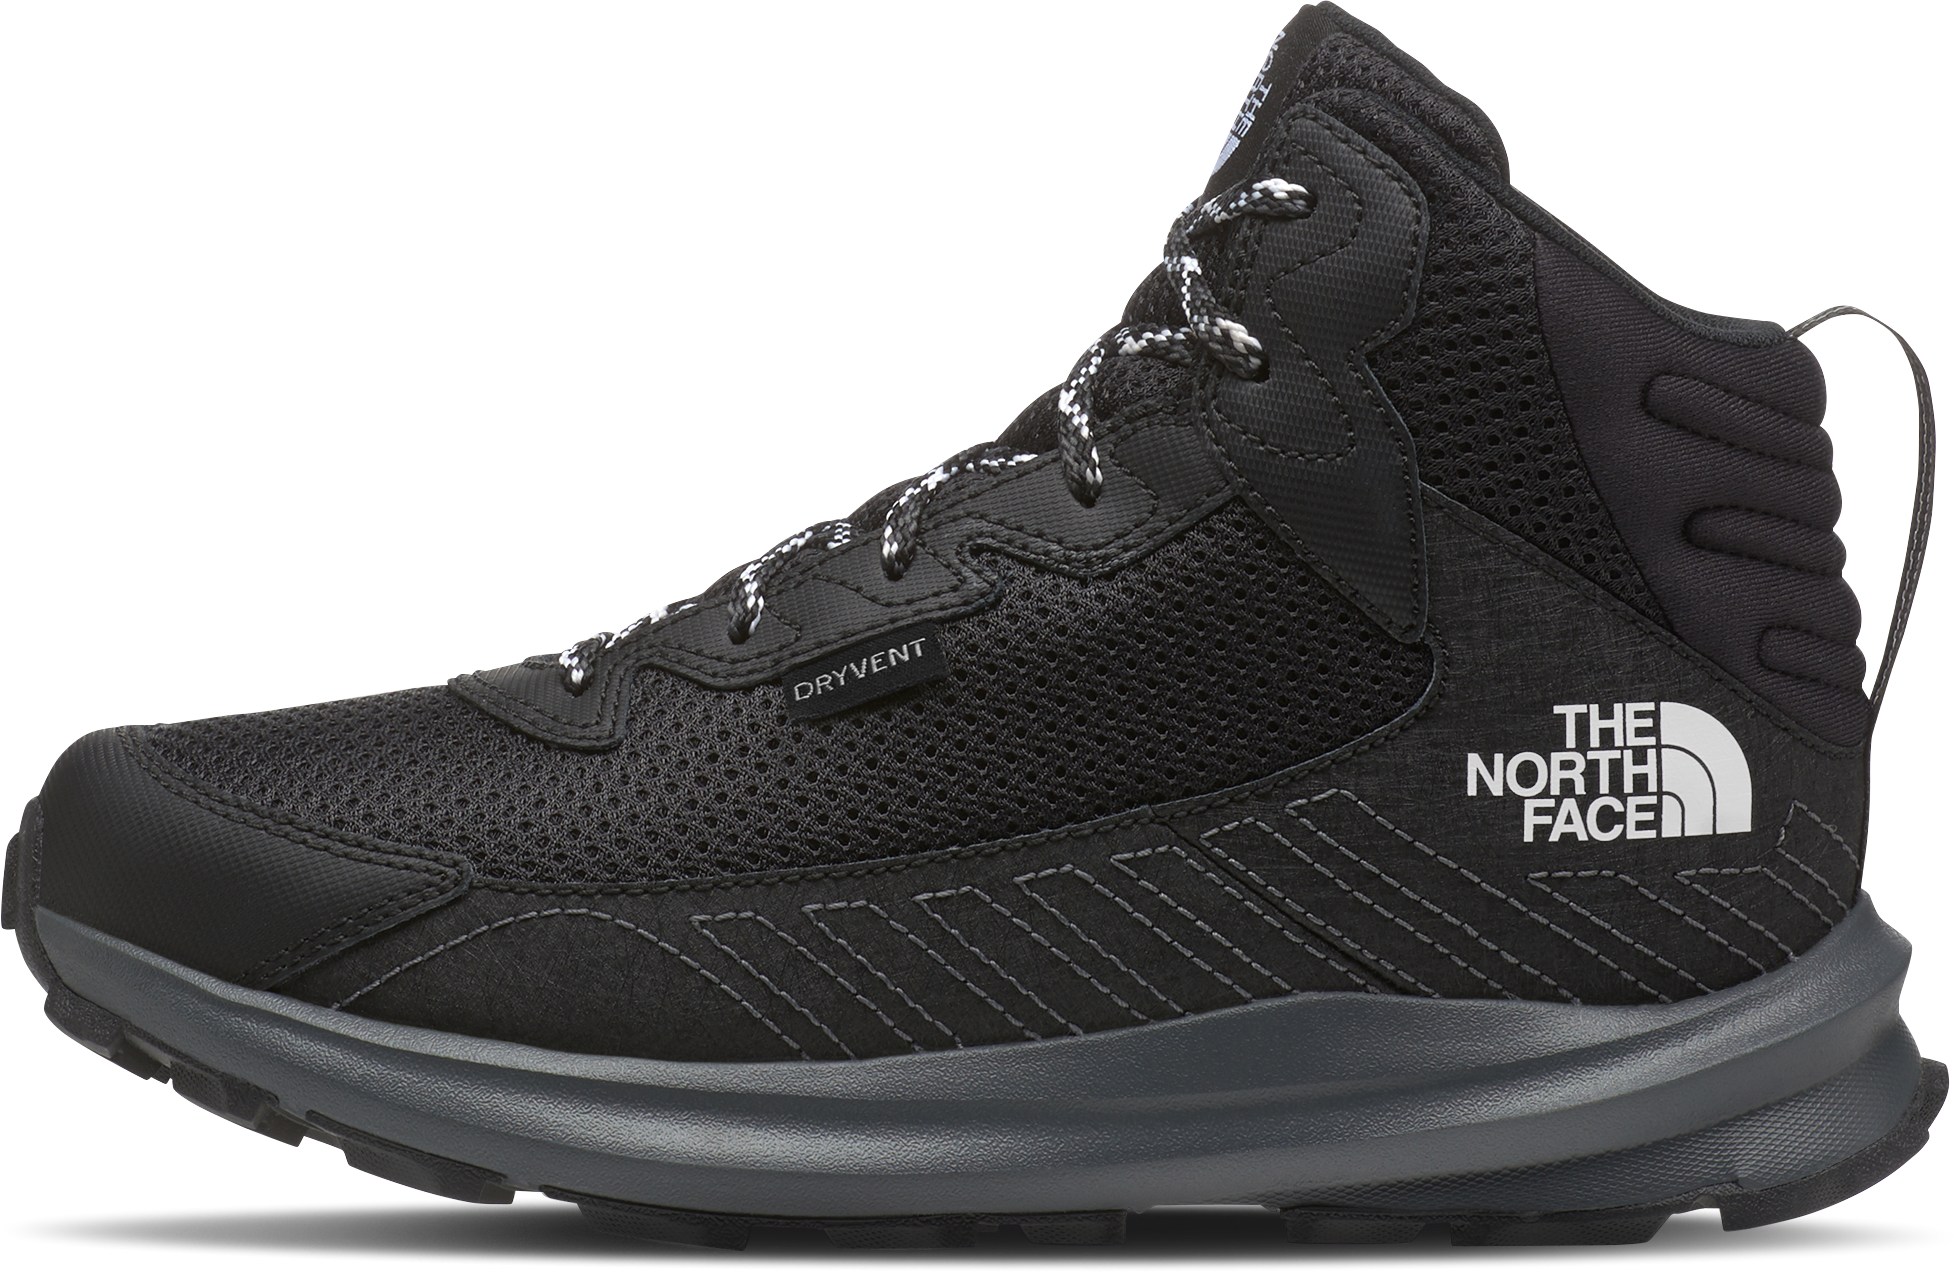 Водонепроницаемые походные ботинки Fastpack Hiker Mid — детские The North Face, черный